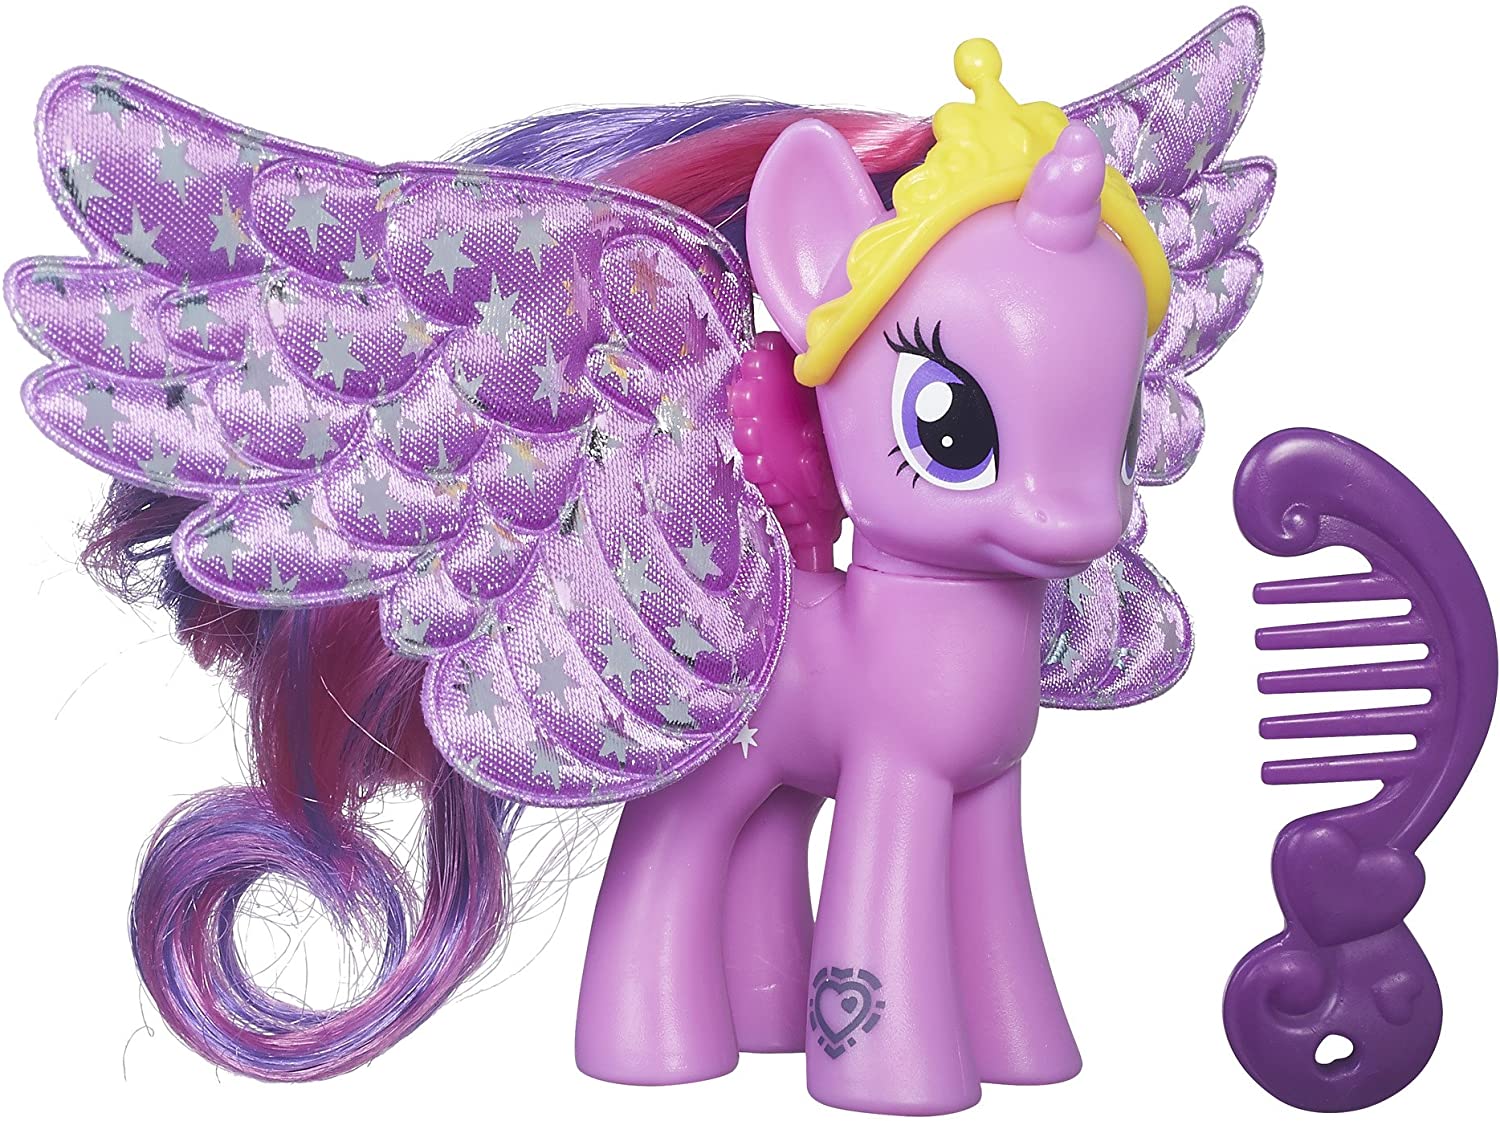 MLP Princess Twilight Sparkle Shimmer Flutters Doll Figure 2